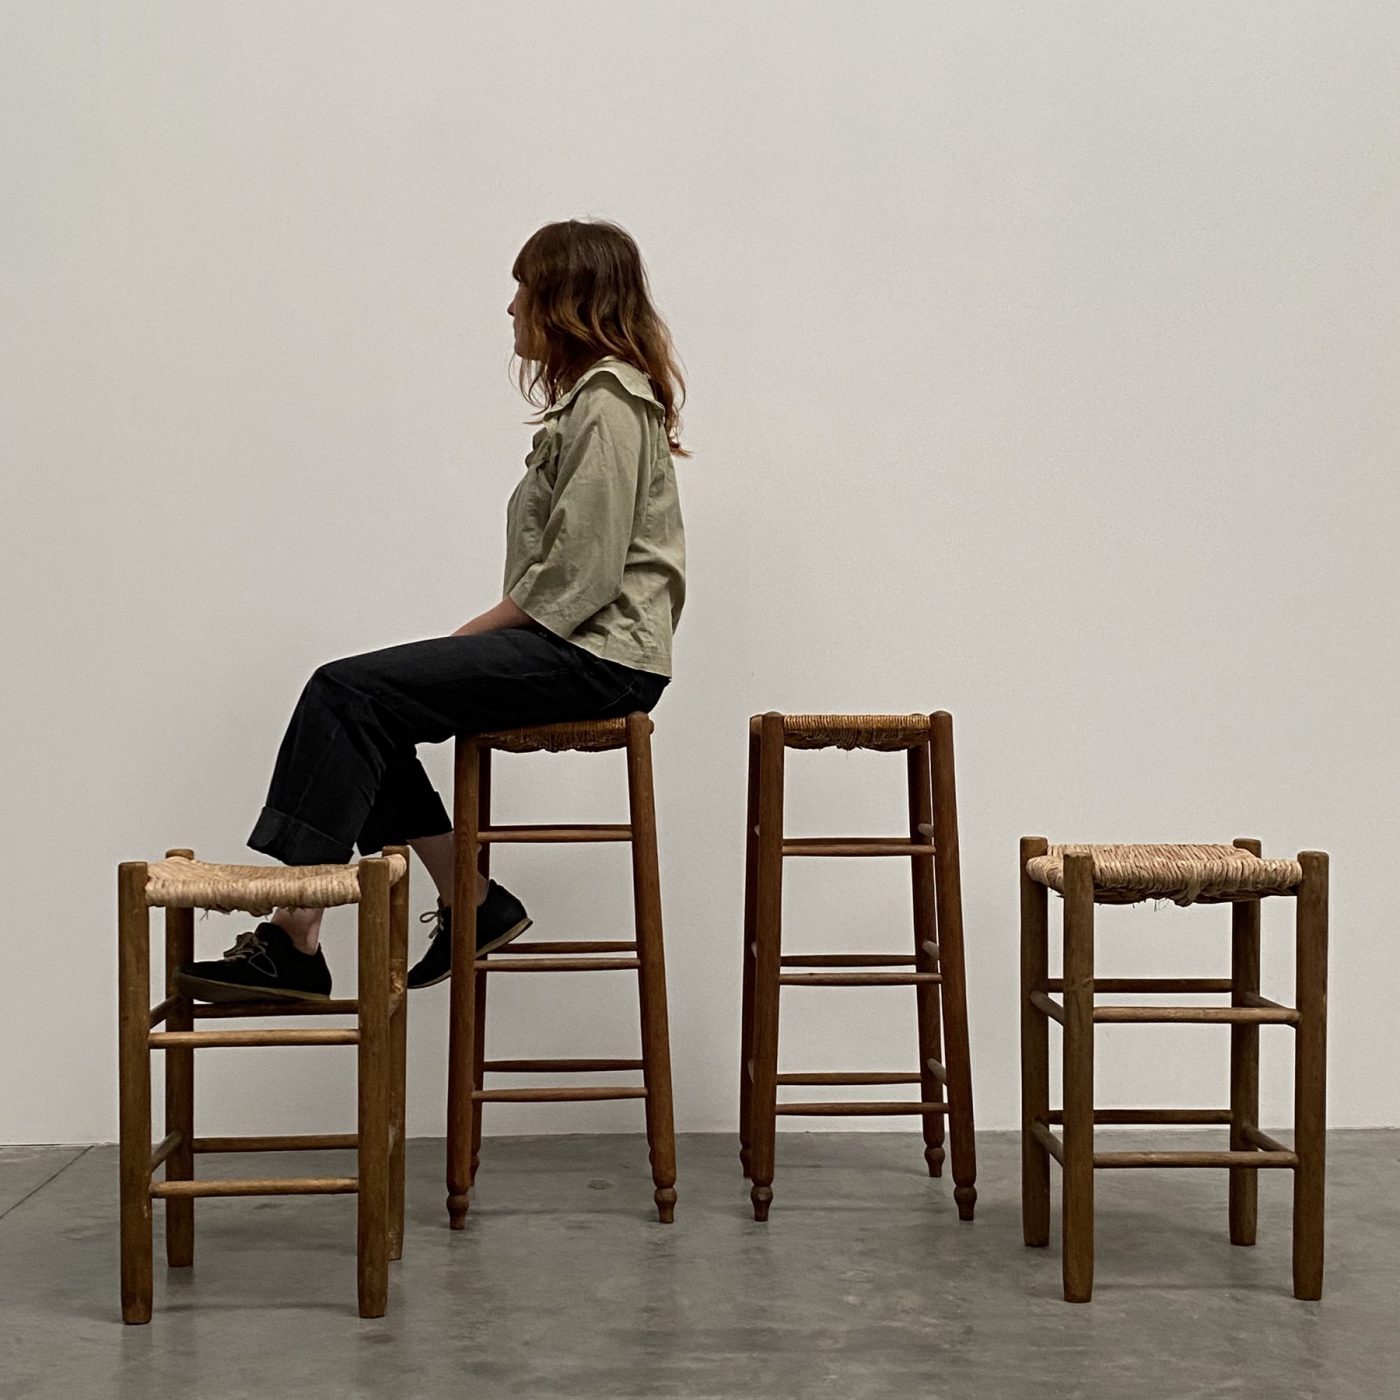 objet-vagabond-french-stools0002